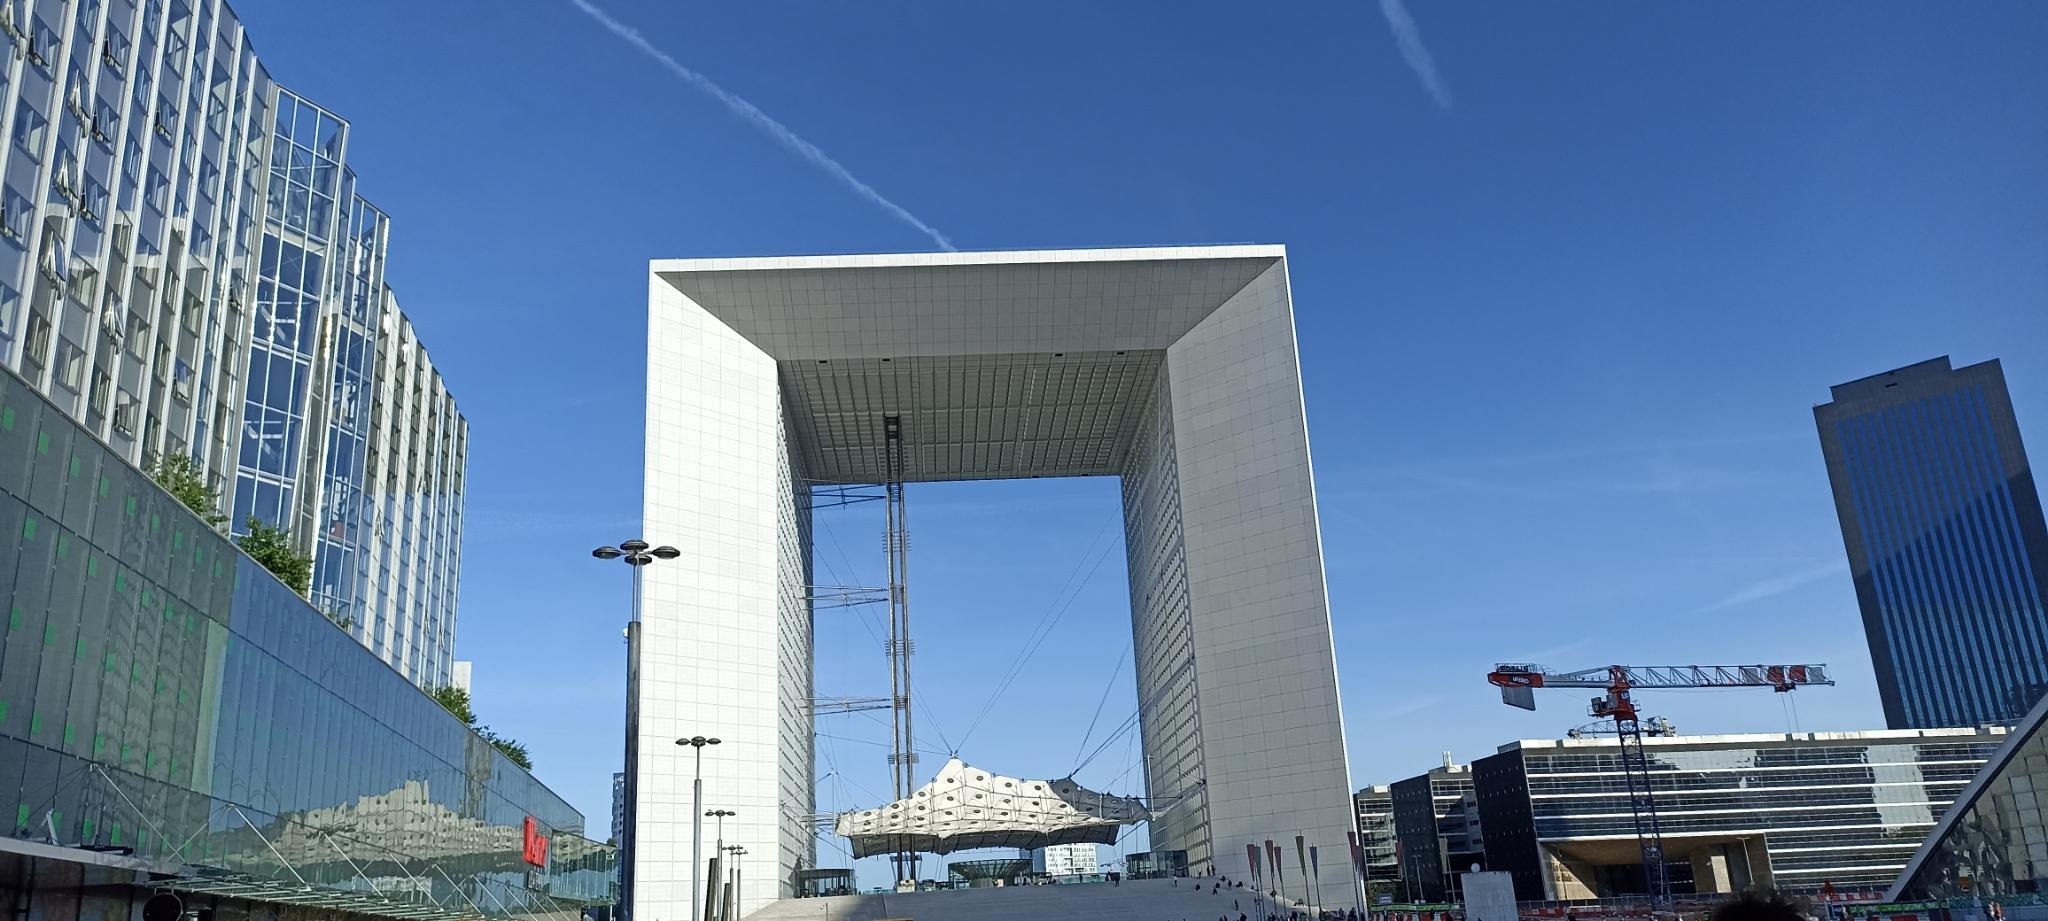 The district 'de la Défense' with its landmark building